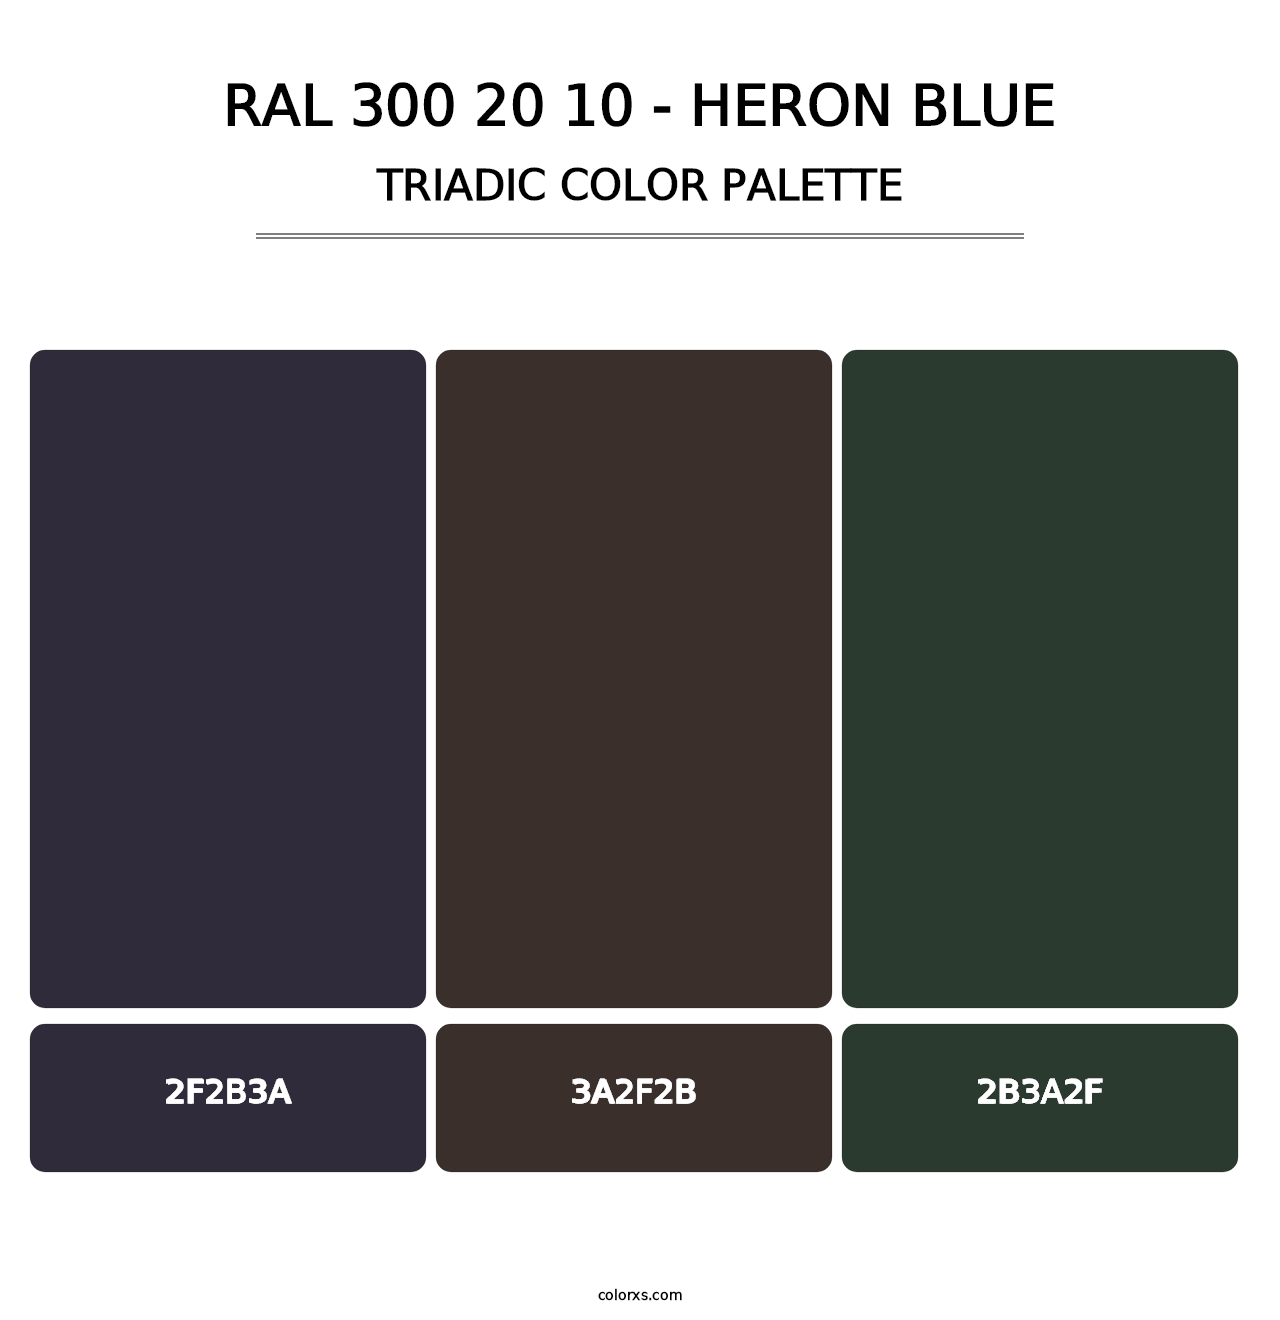 RAL 300 20 10 - Heron Blue - Triadic Color Palette